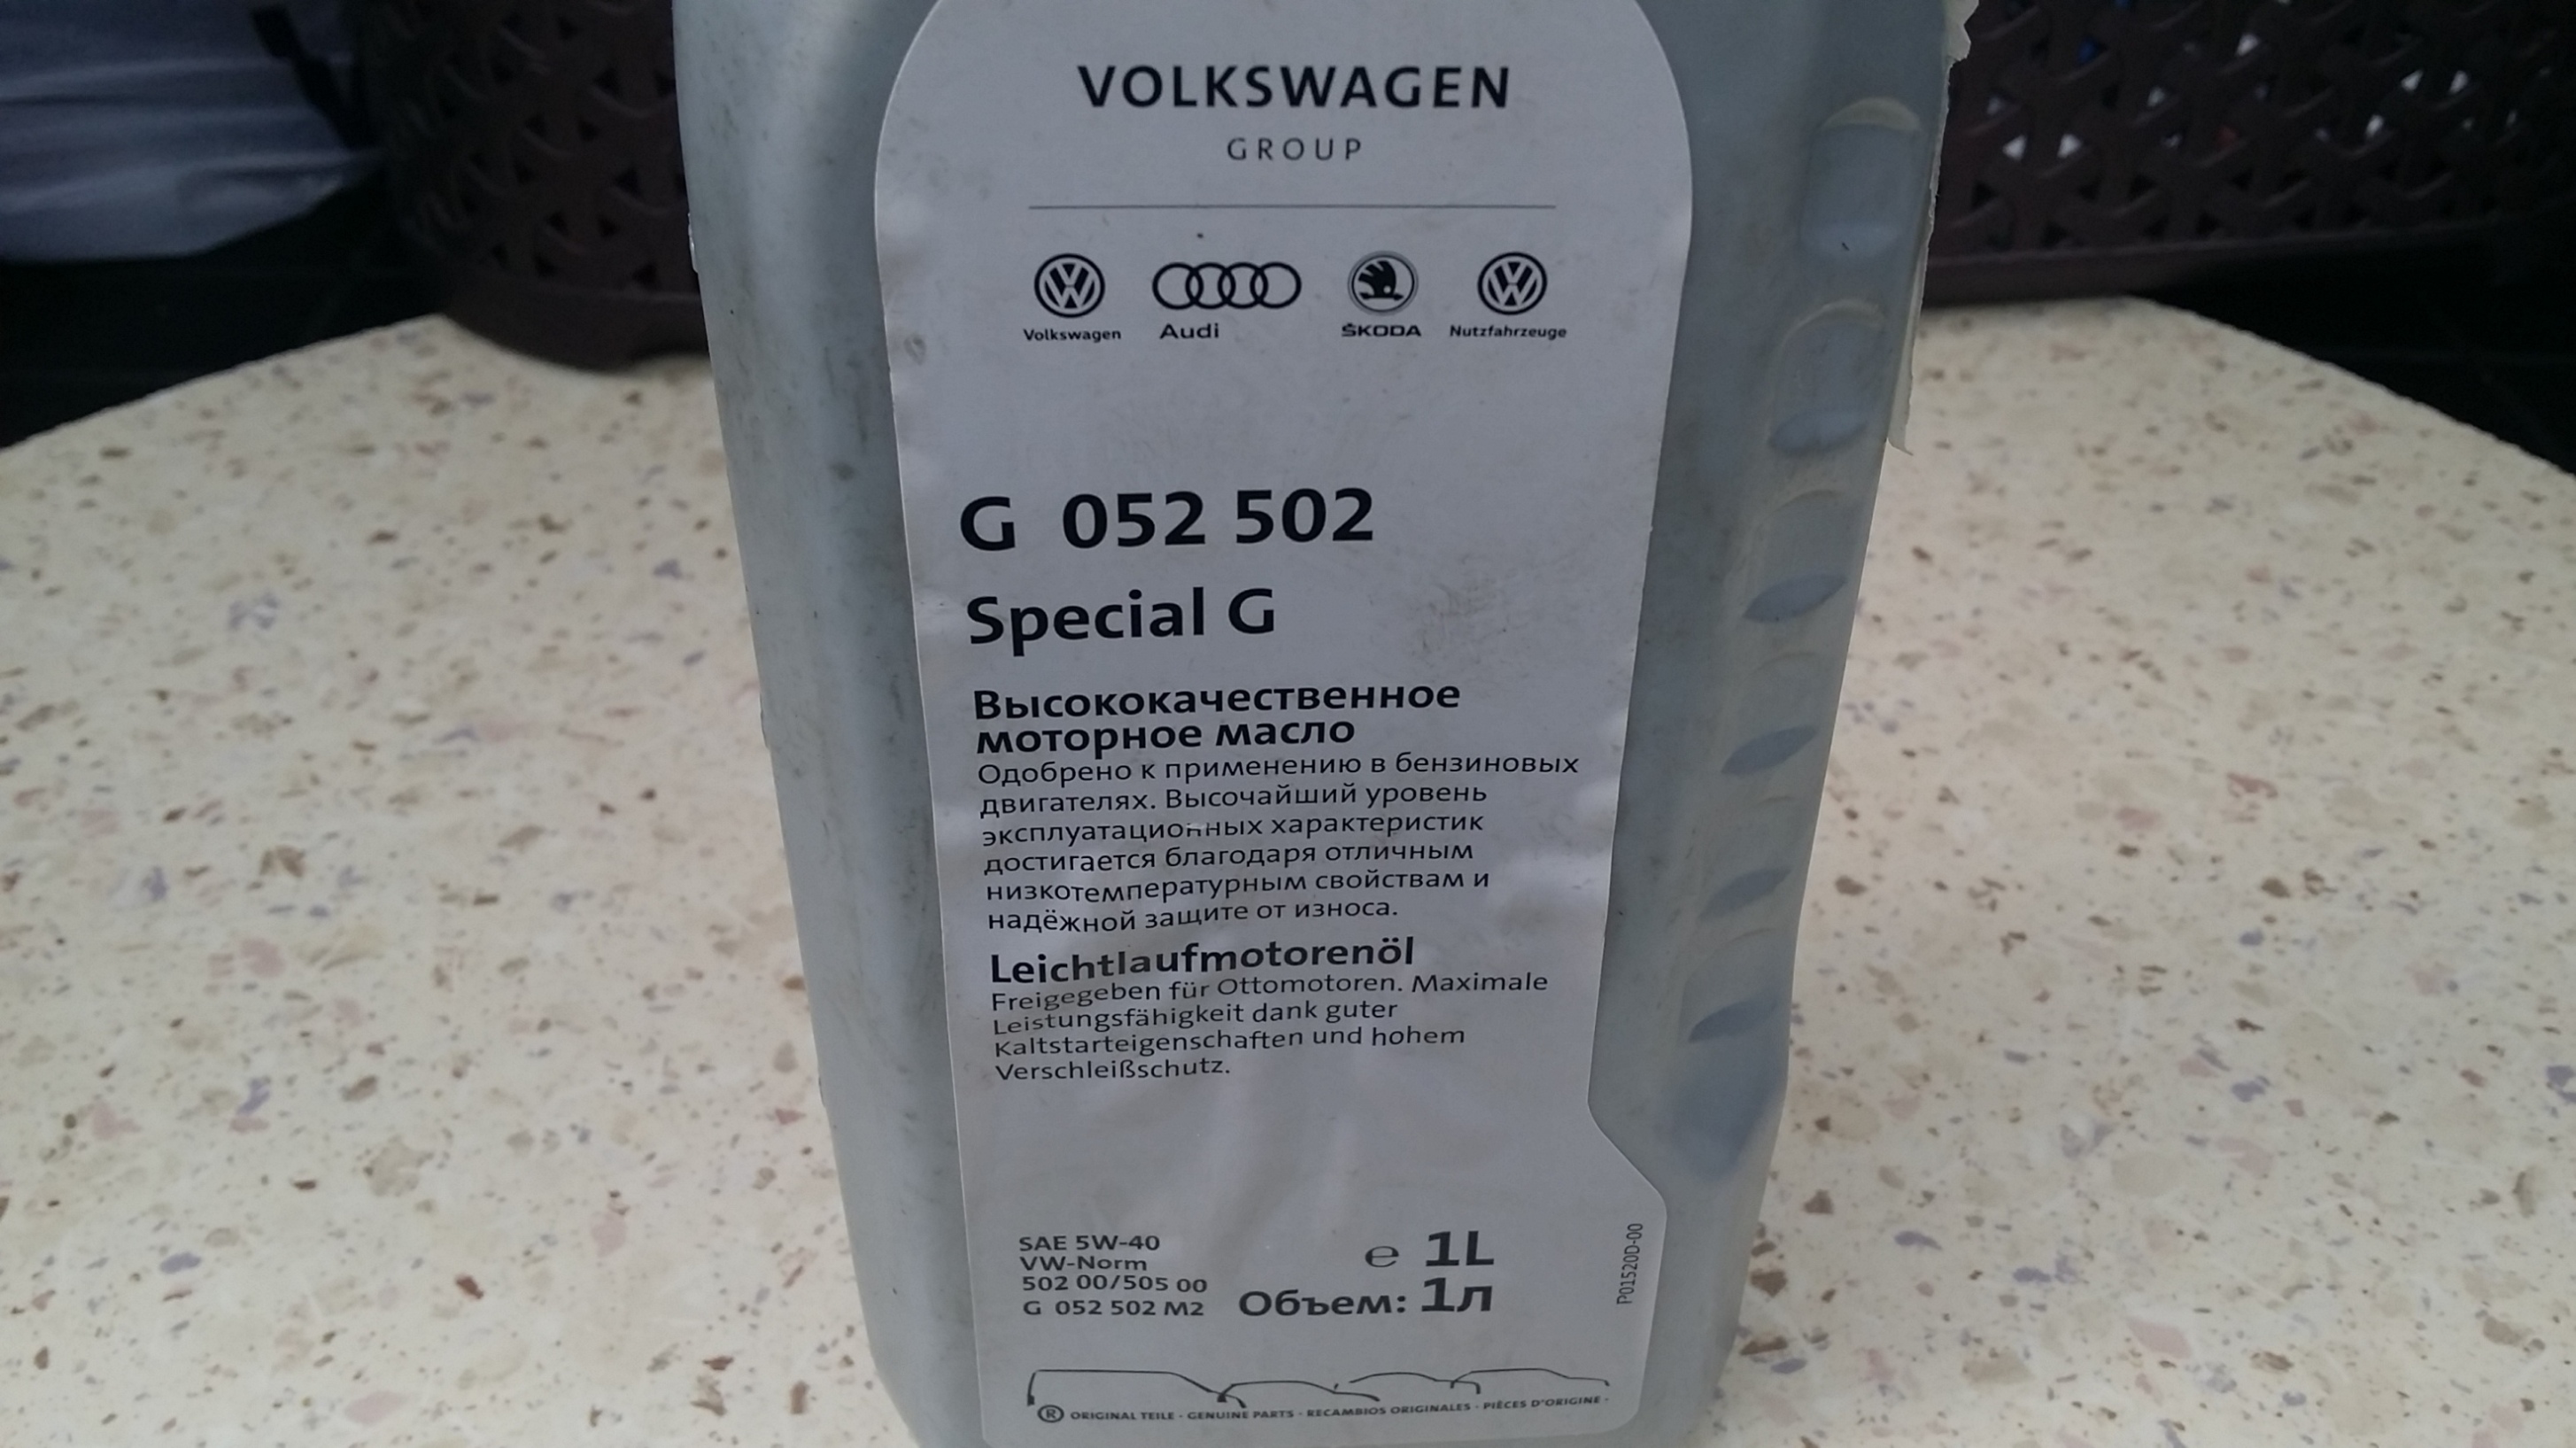 Допуски масла vag. CWVA допуски масла. Оригинальное масло для Volkswagen Polo. Какое масло заливать в двигатель CWVA 1.6 MPI 110 Л.С. Маркировка канистры масла Special g.